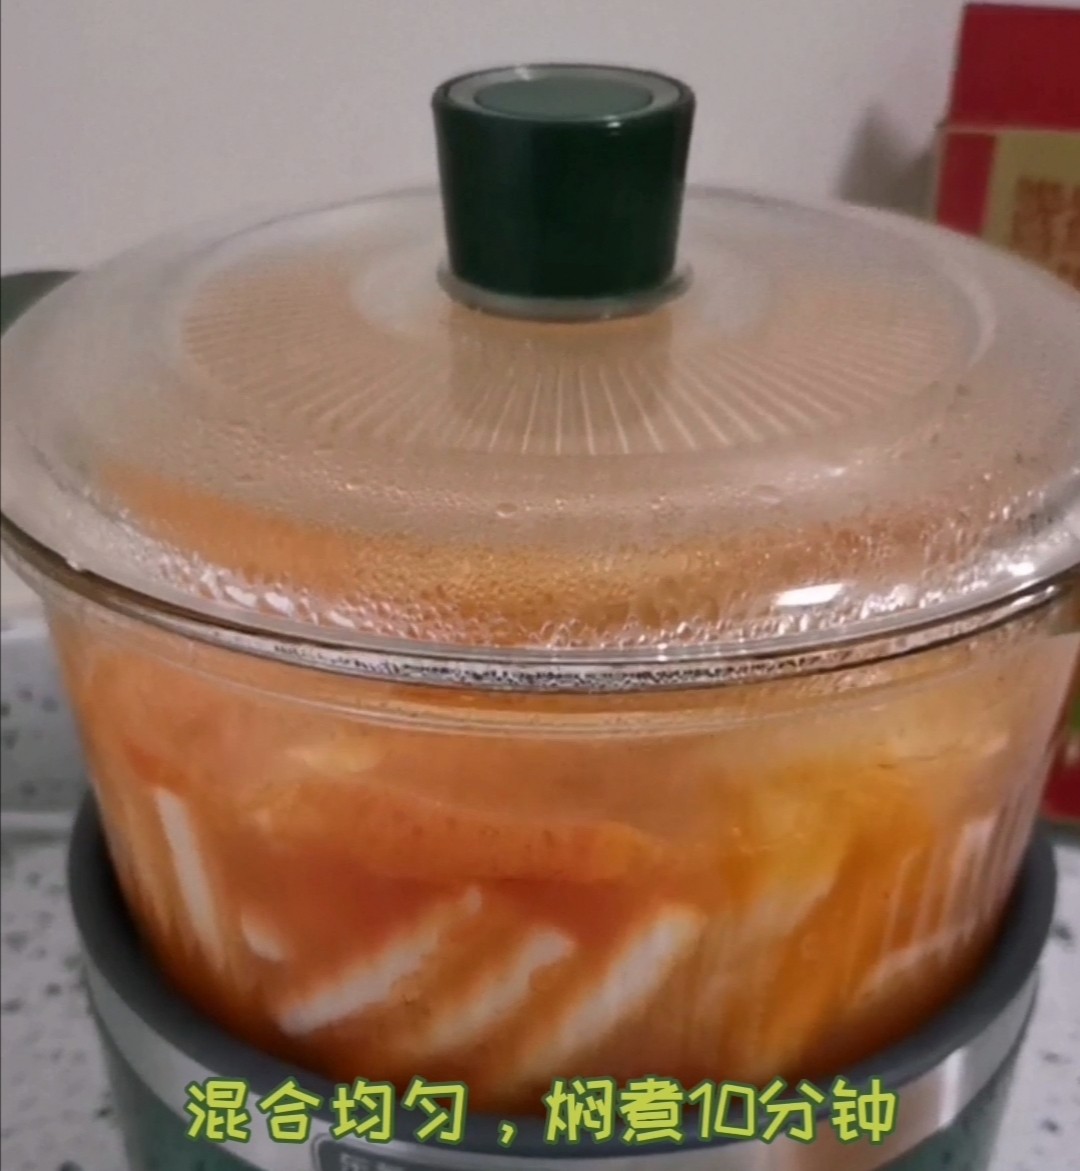 Korean Family Small Hot Pot recipe